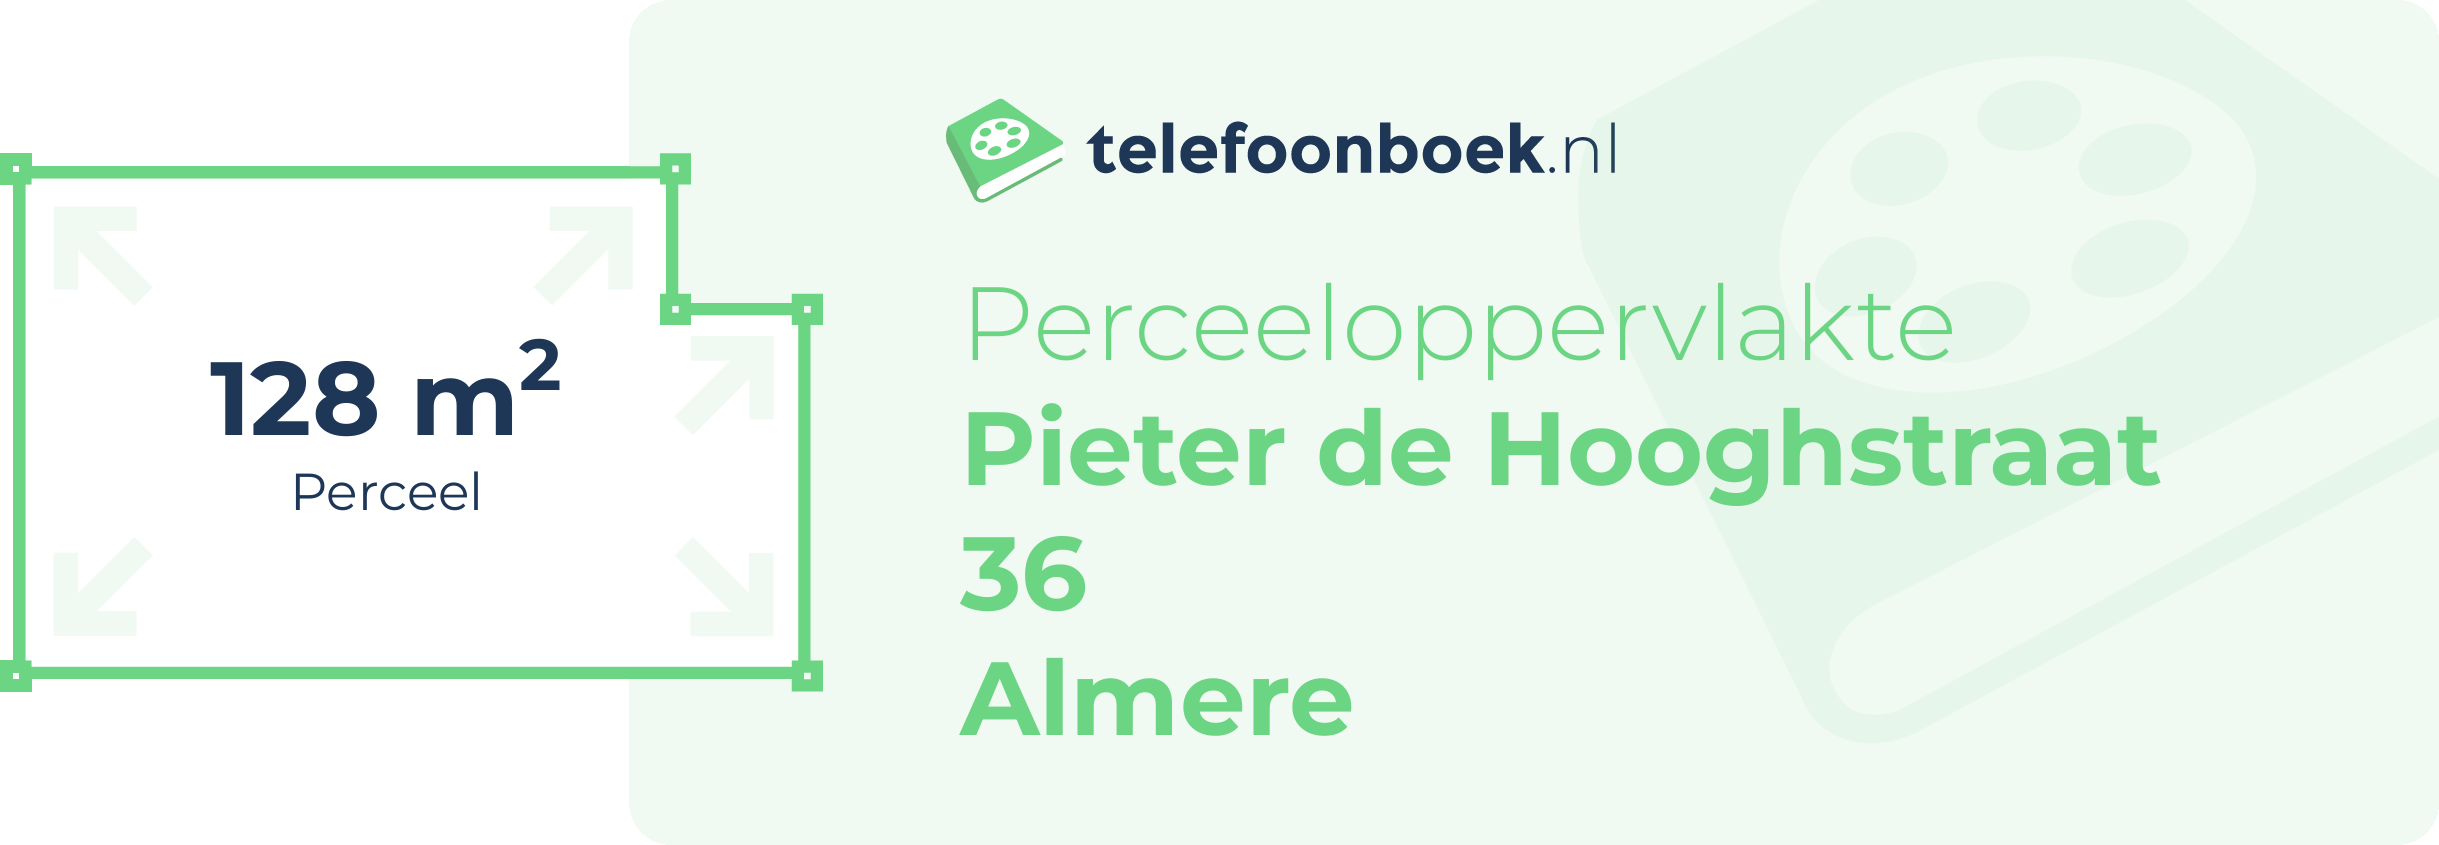 Perceeloppervlakte Pieter De Hooghstraat 36 Almere